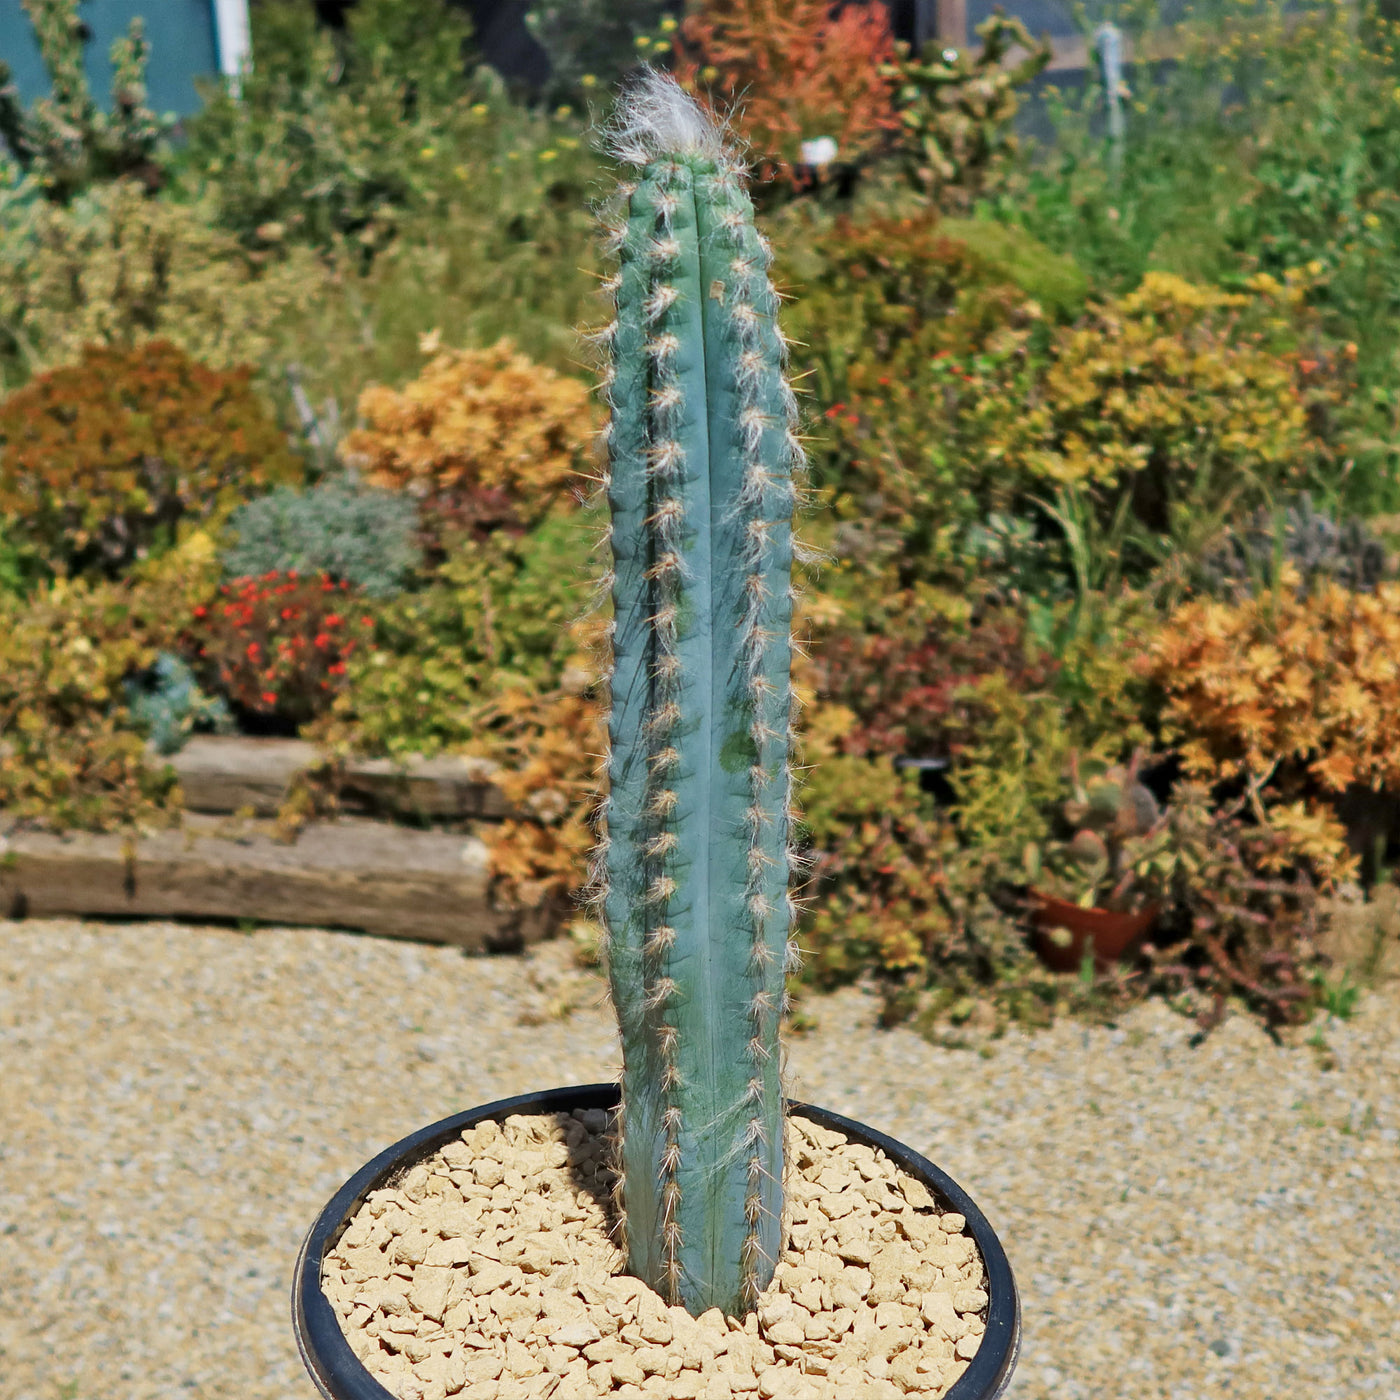 Blue Torch Cactus 'Pilosocereus pachycladus'